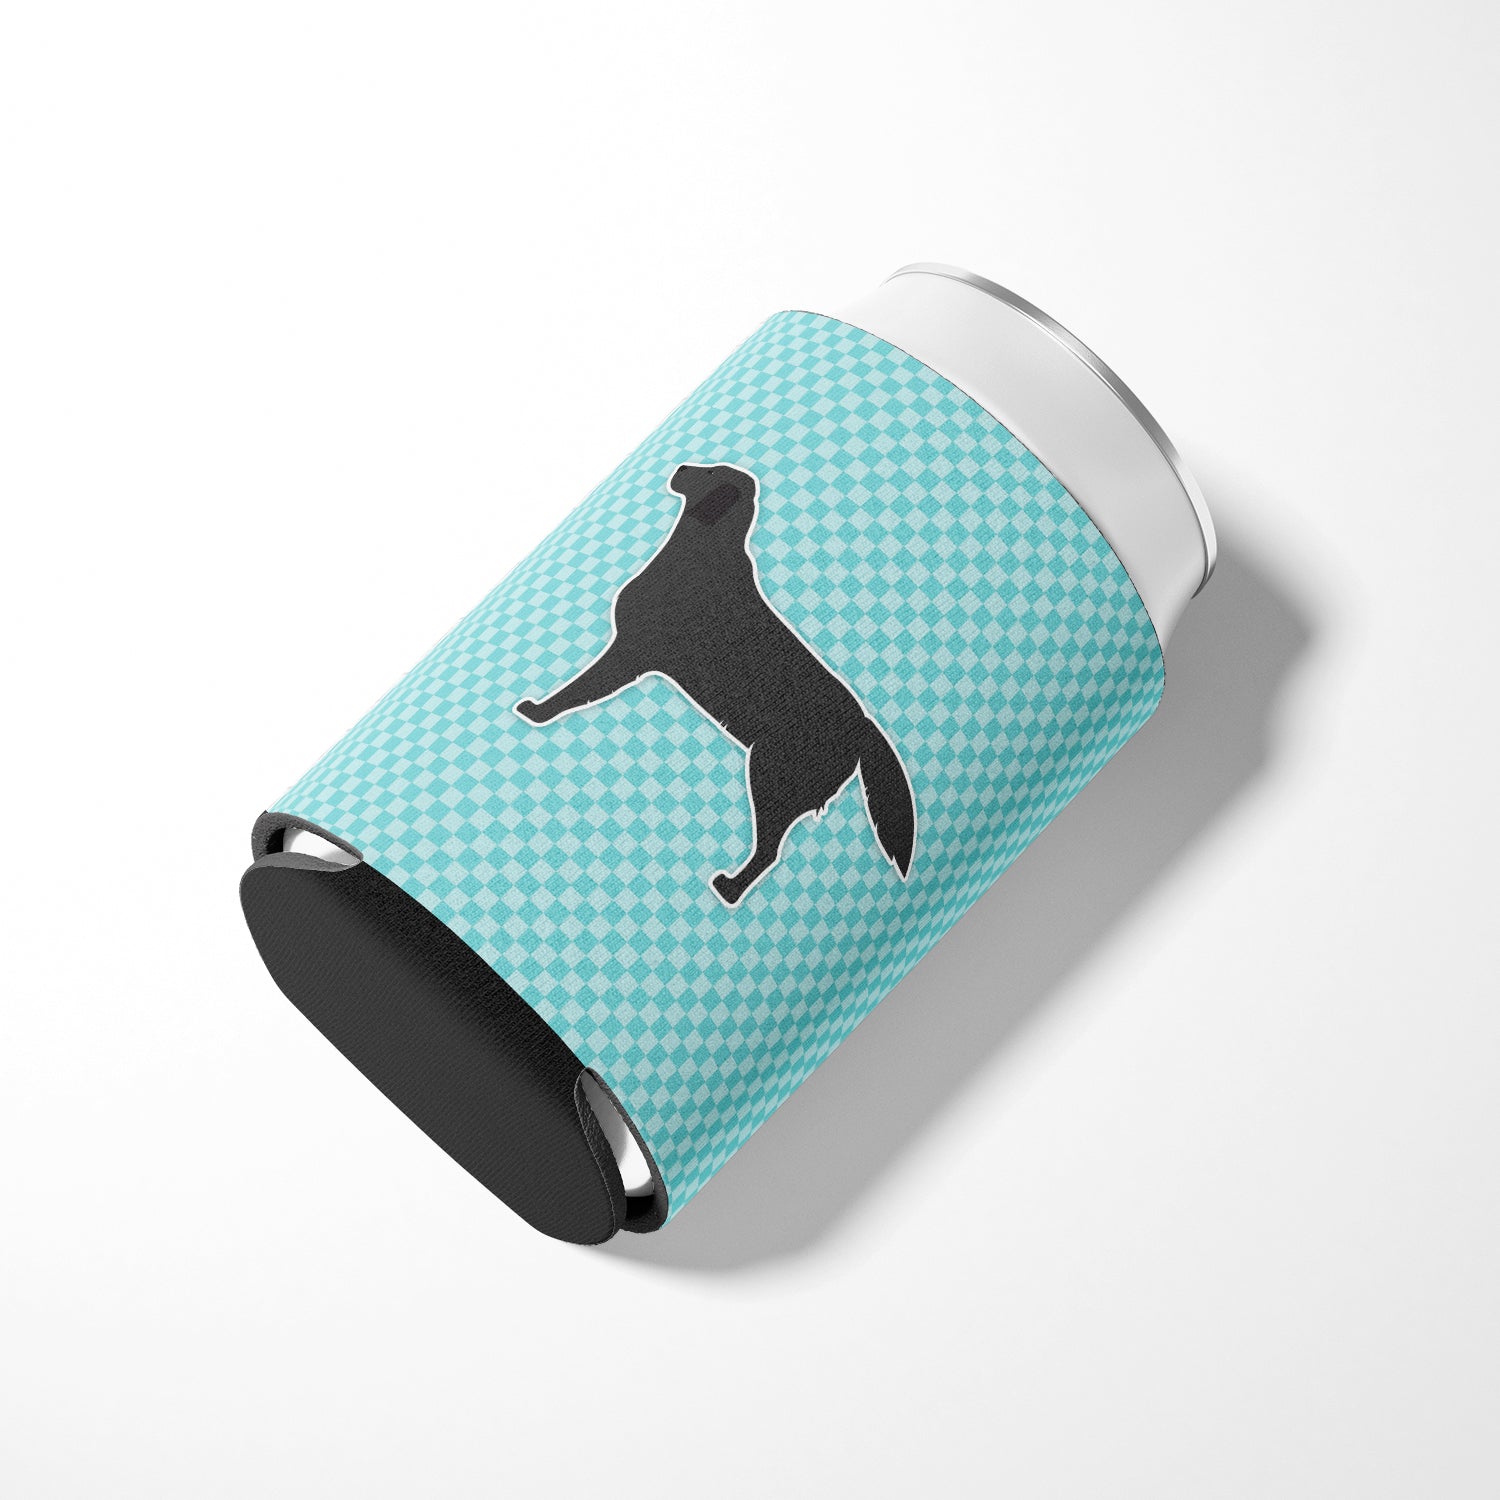 Black Labrador Retriever  Checkerboard Blue Can or Bottle Hugger BB3708CC